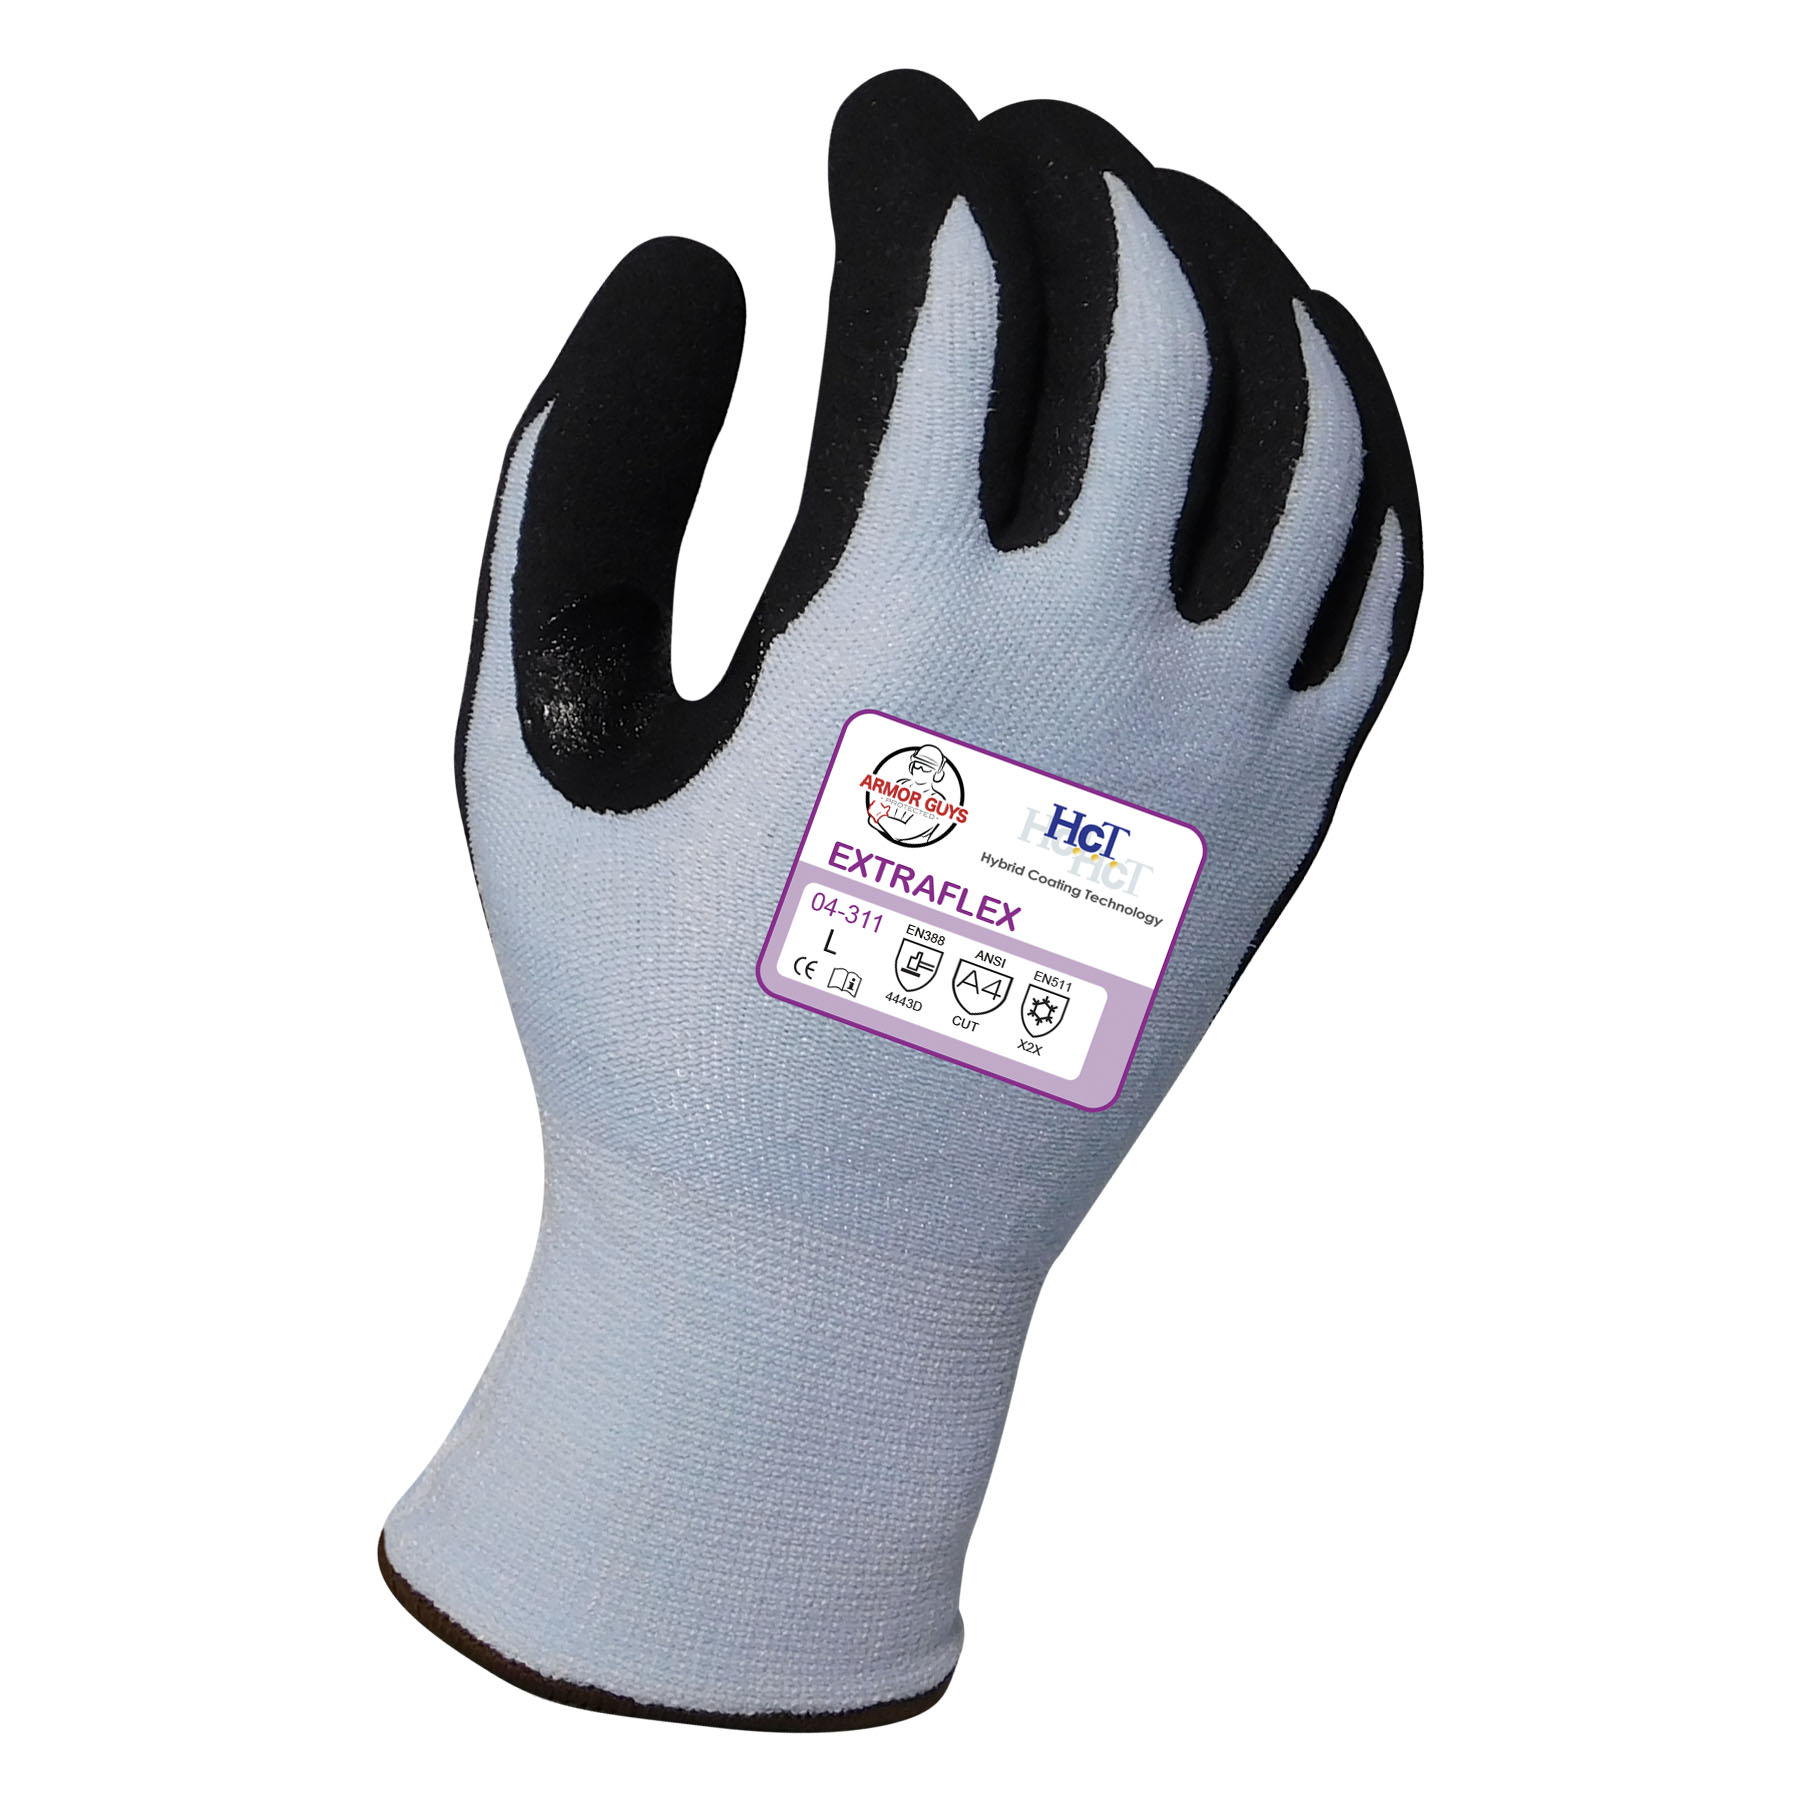 Armor Guys Extraflex Gloves - Gloves